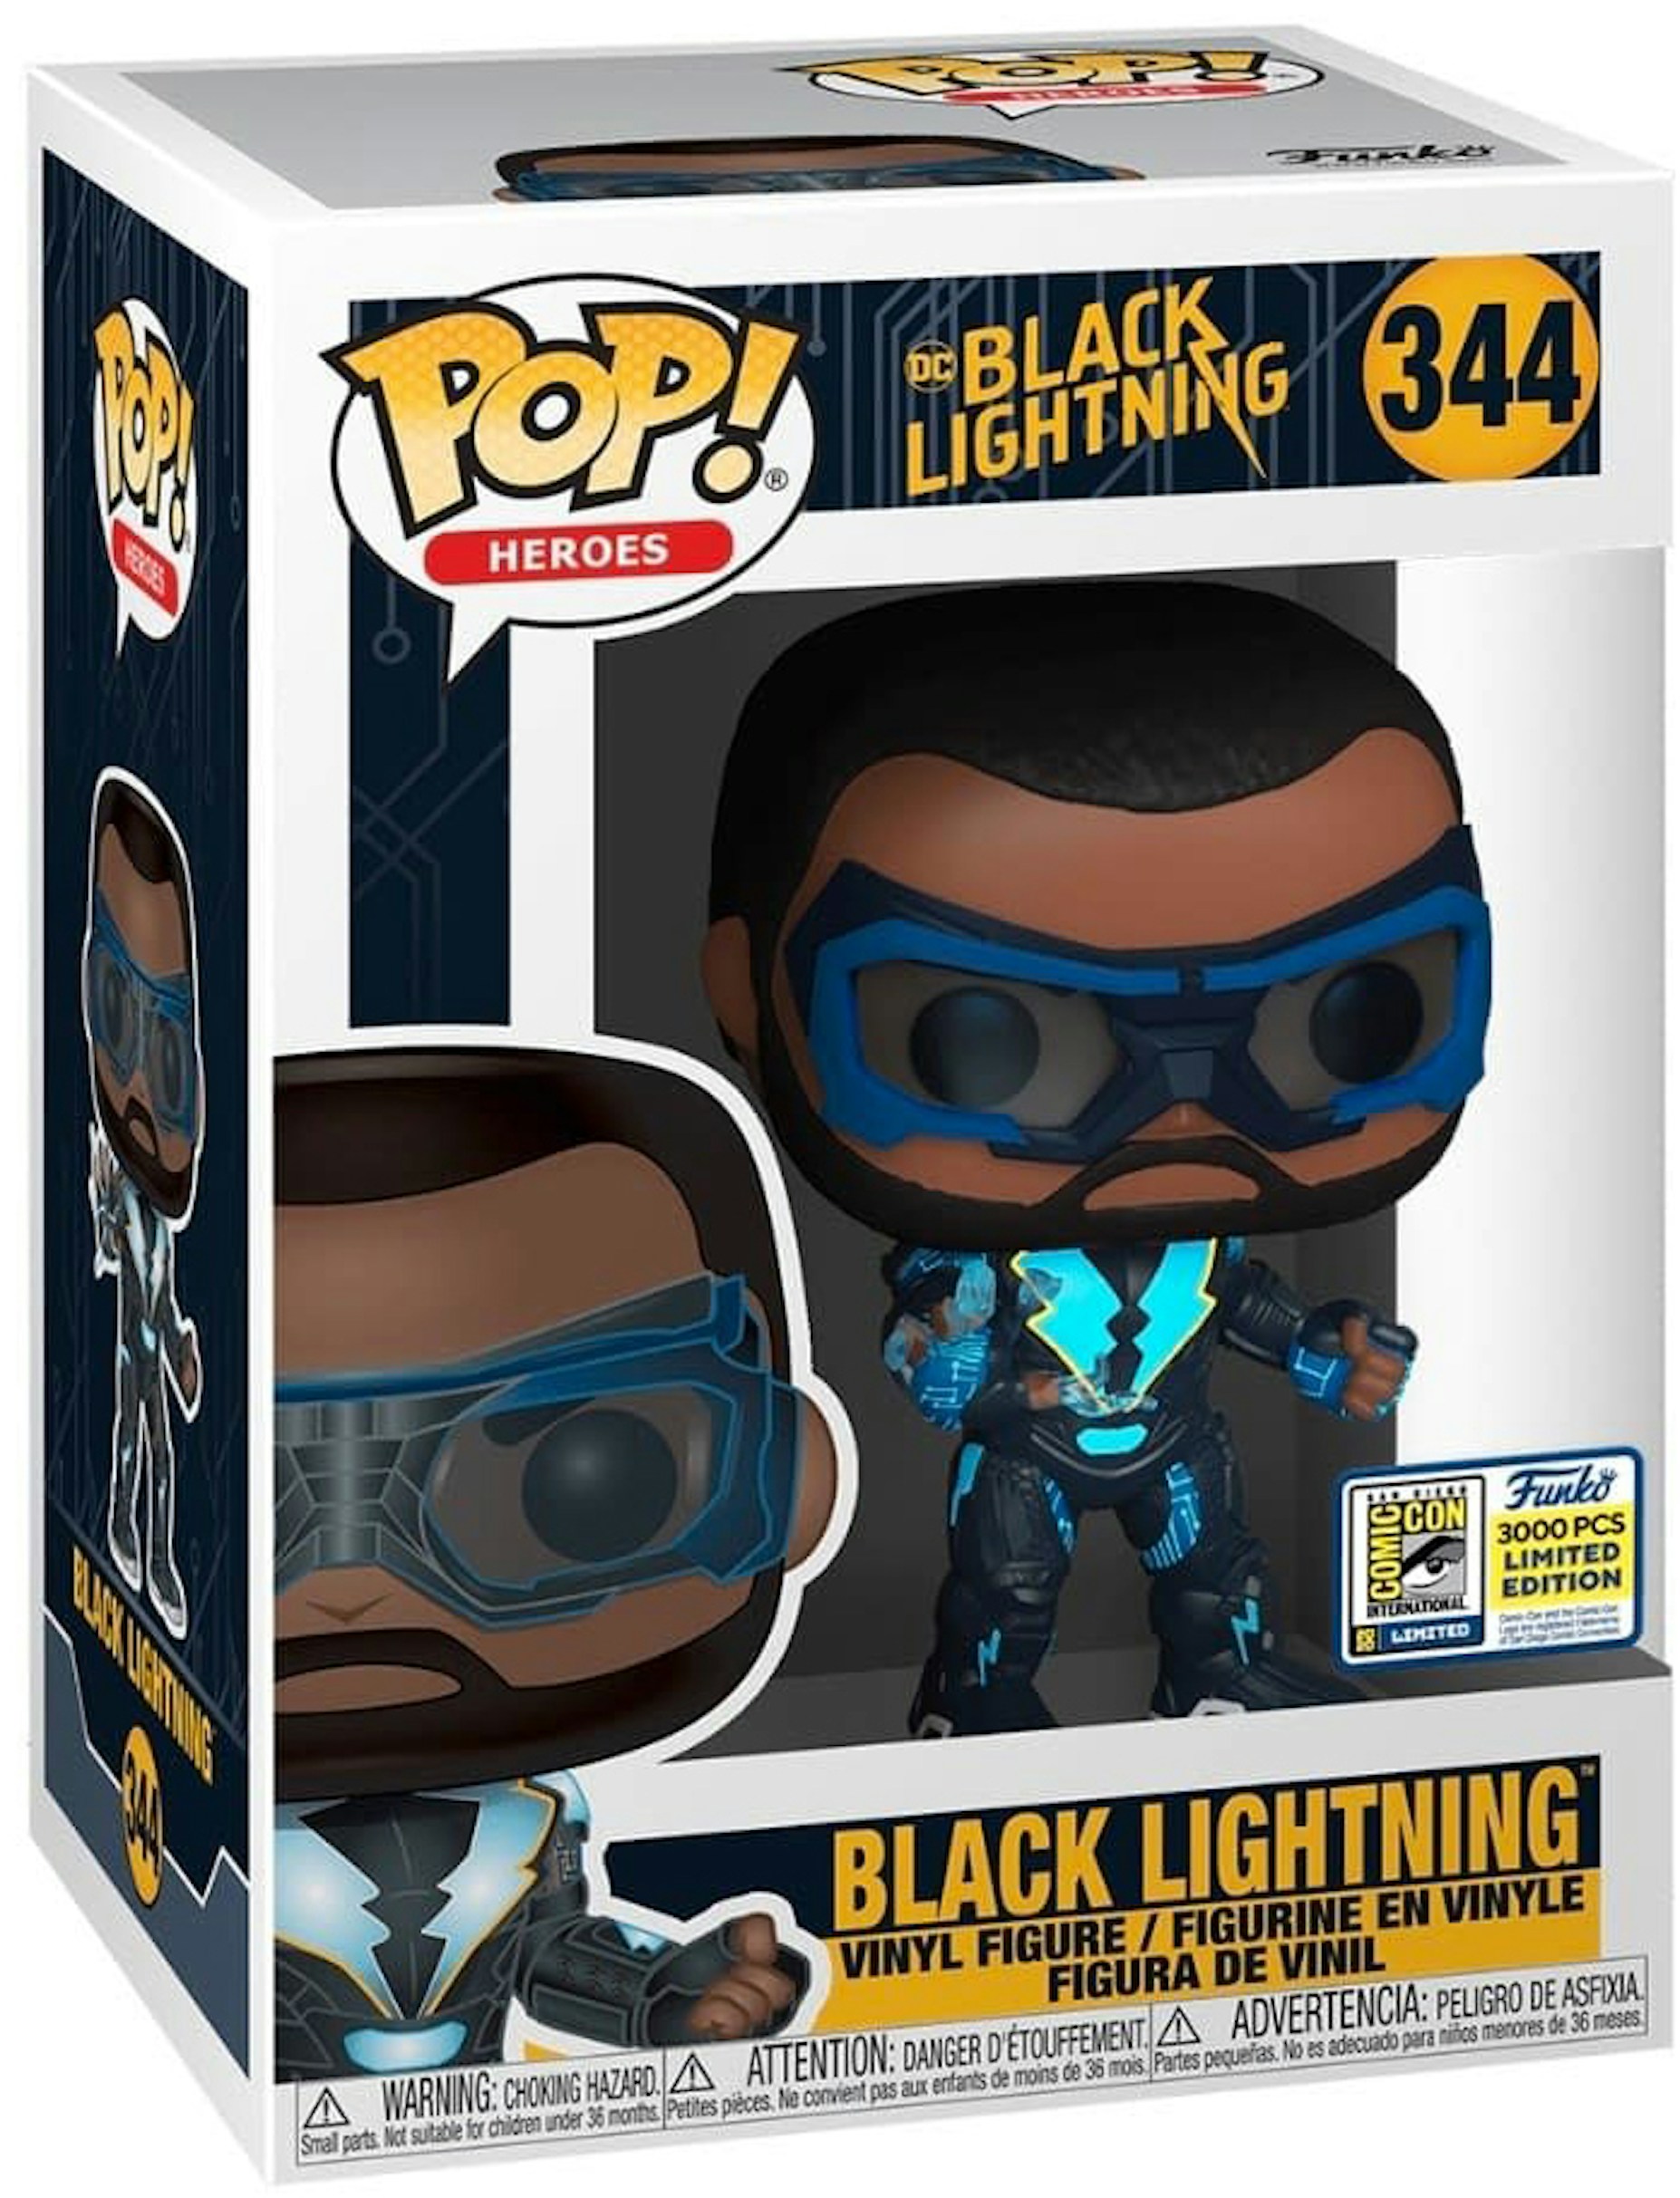 Funko Pop! Heroes Black Lightning Black Lightning SDCC Exclusive LE